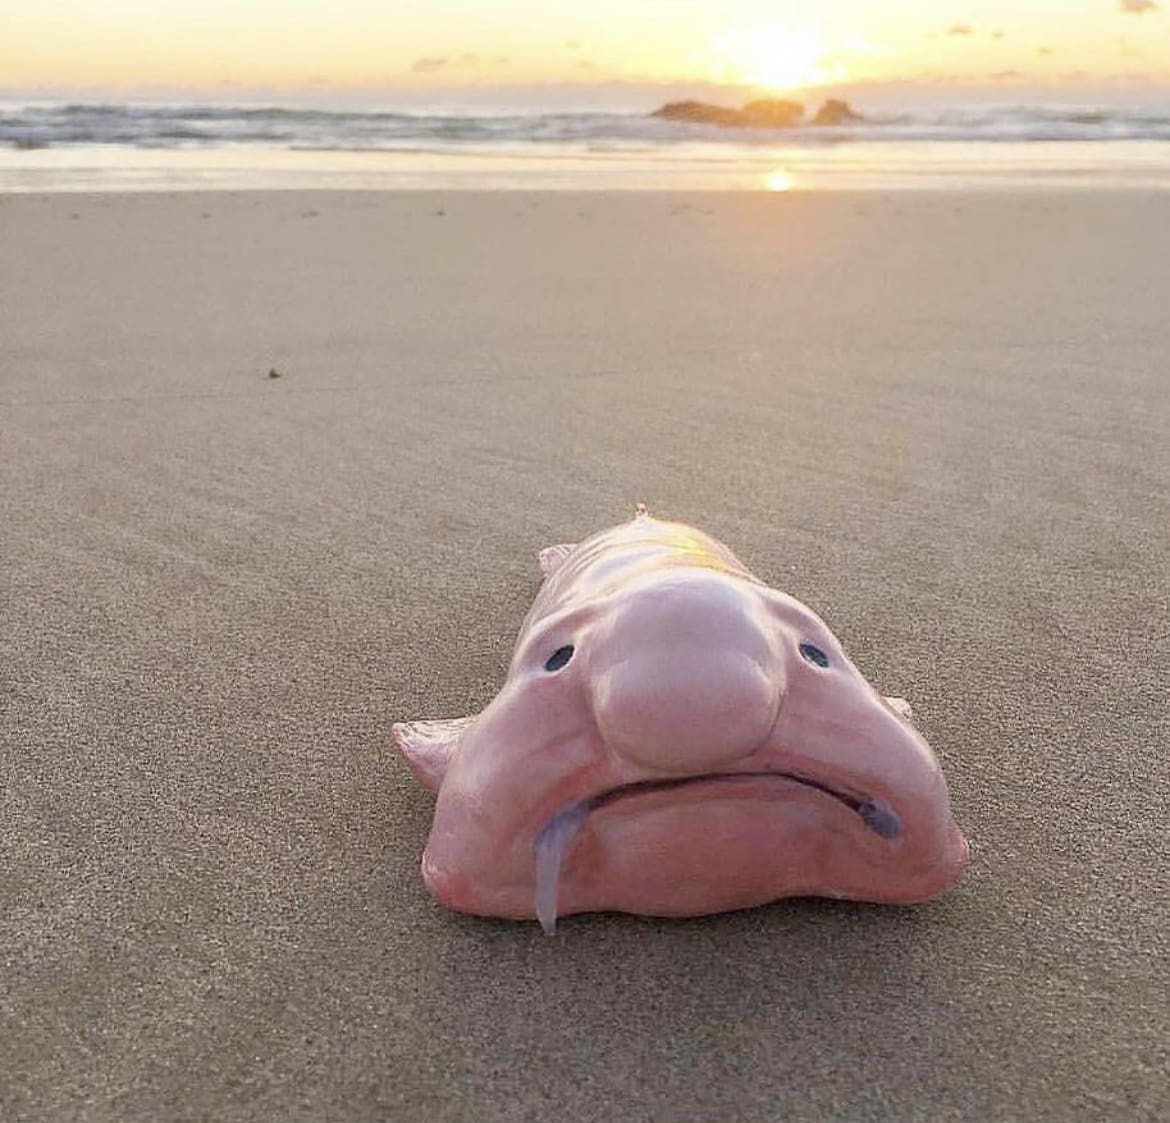 Blobfish: The Underwater Sad Sack